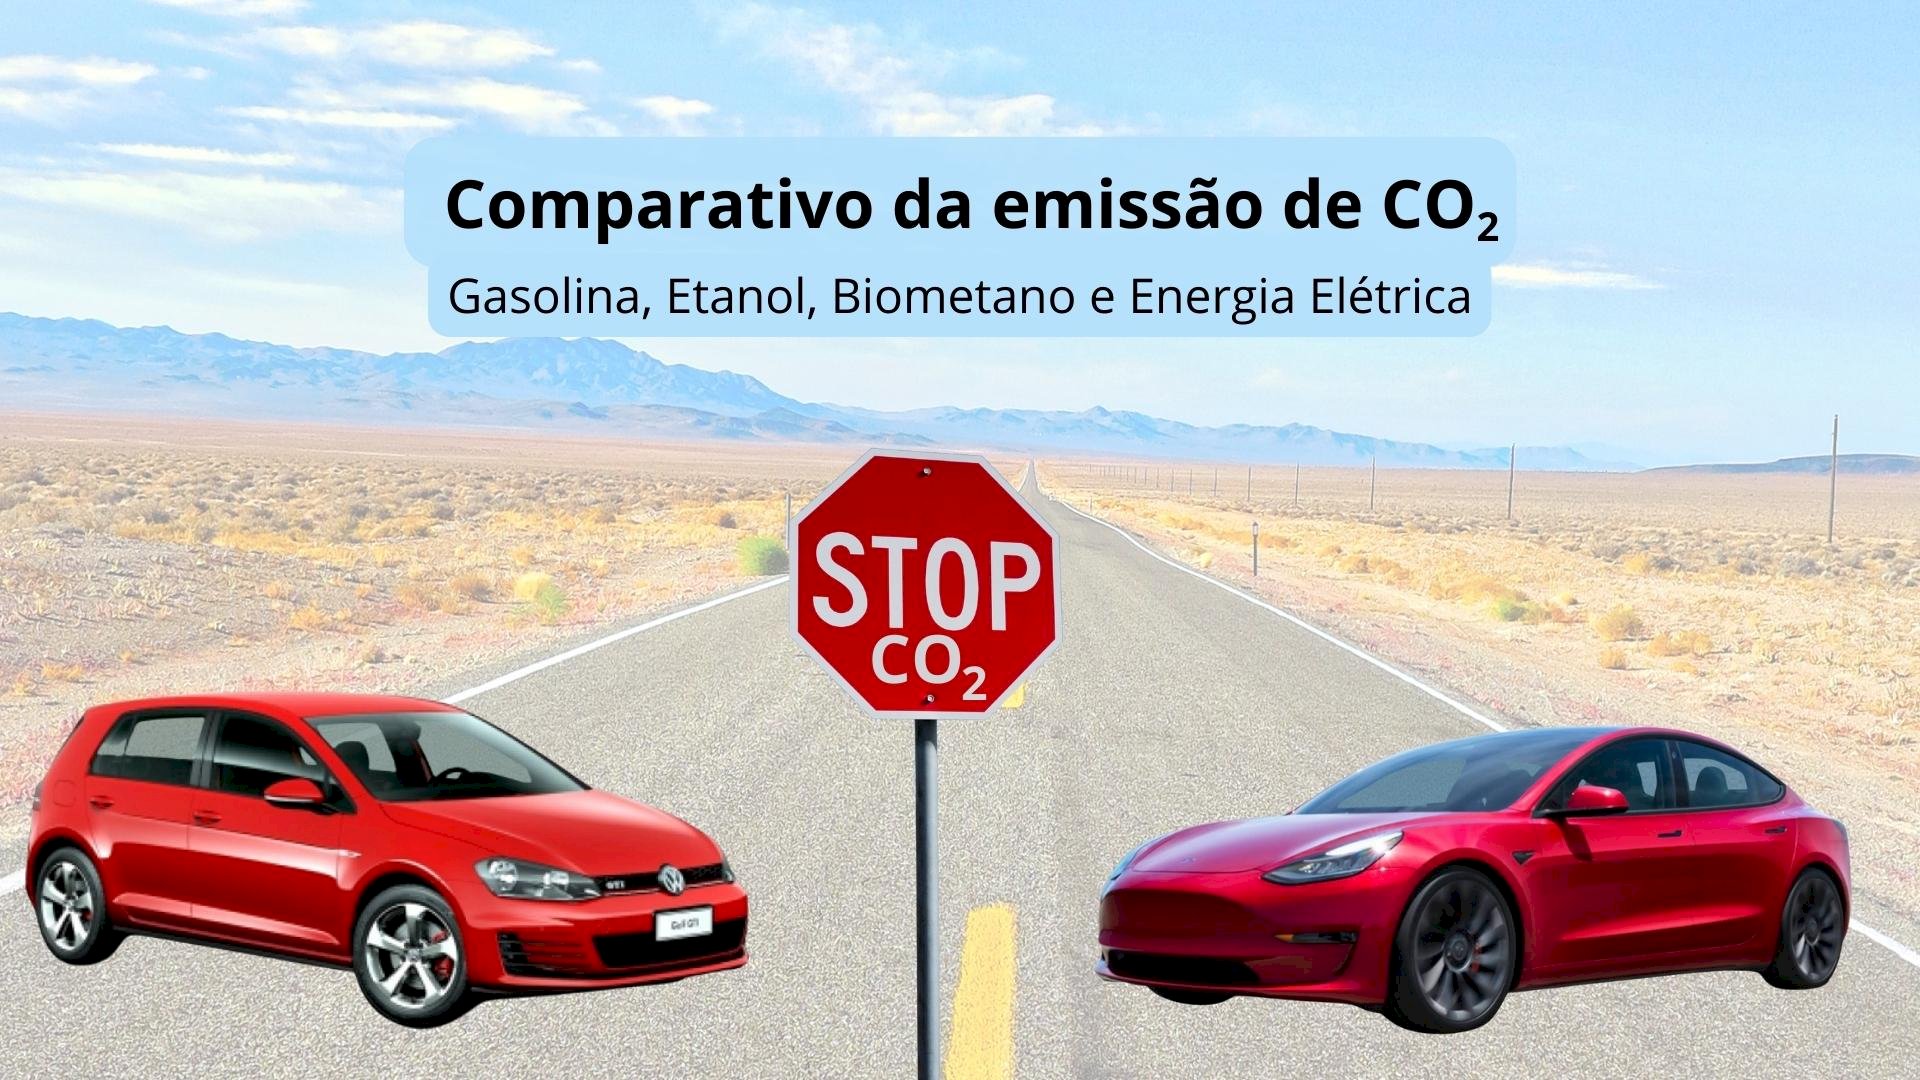 Comparativo da emissão de carbono (CO2): Gasolina, Etanol, Biometano e Energia Elétrica